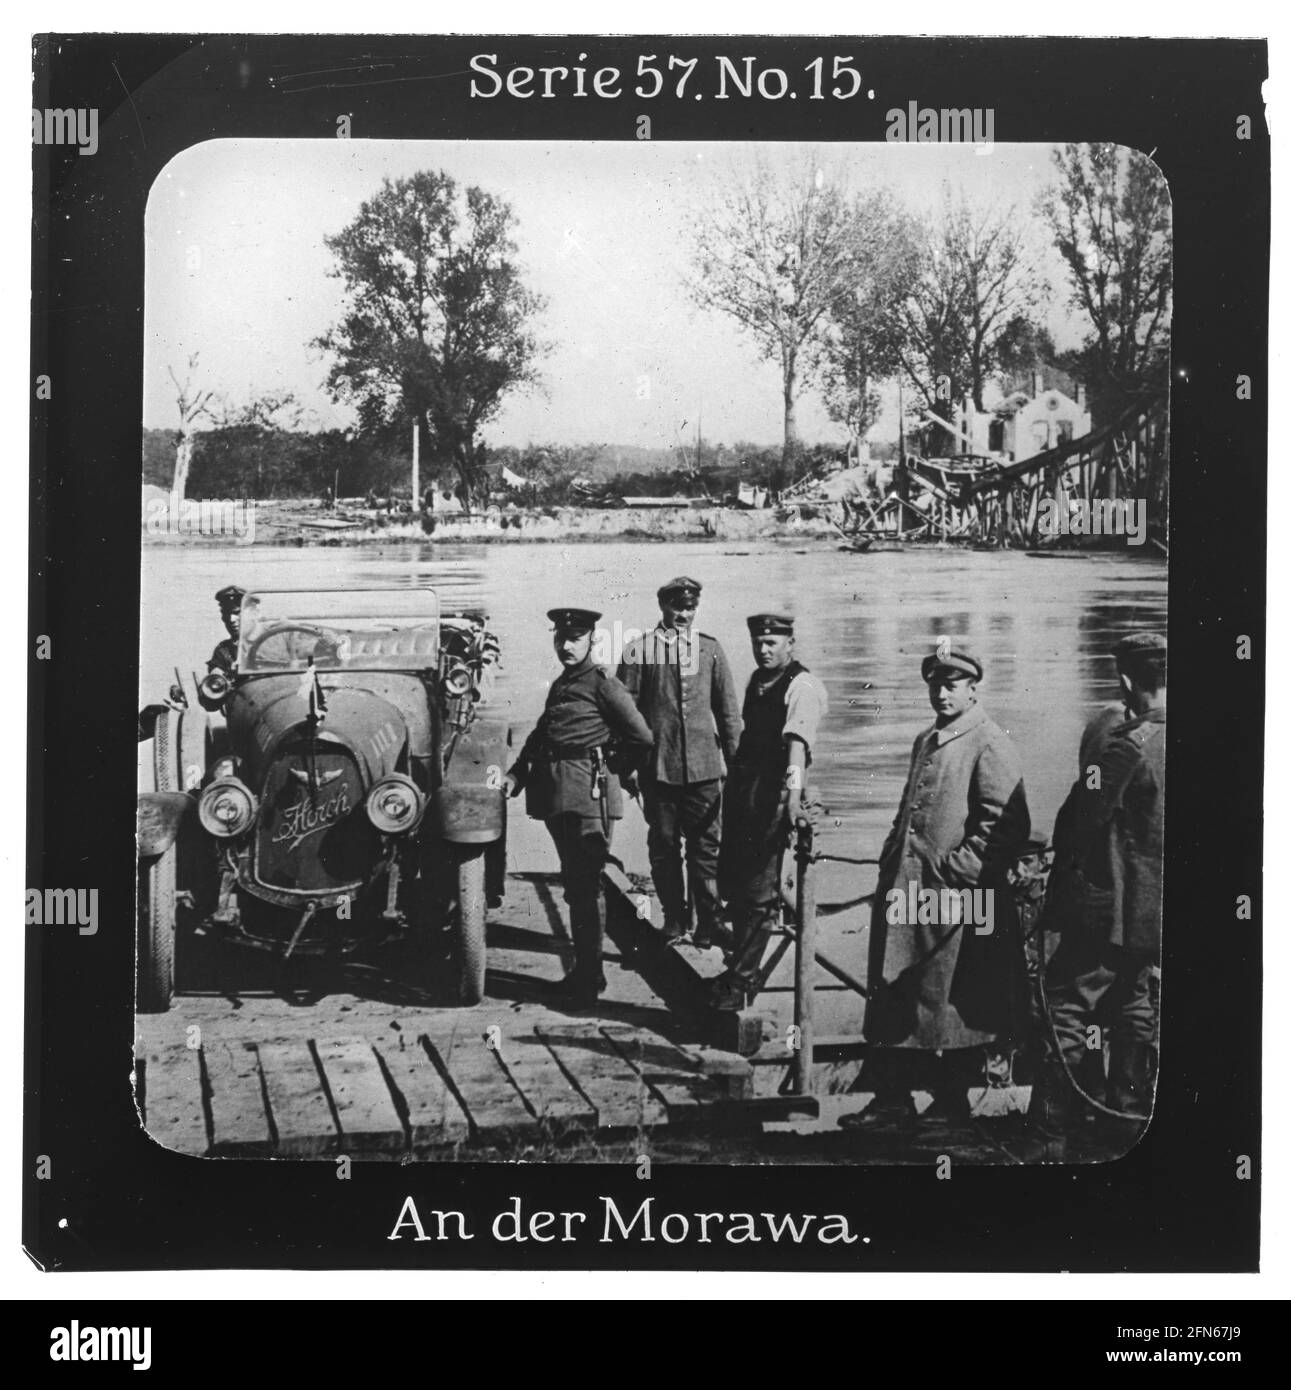 Projection für Alle - Die Eroberung Serbiens. Serie 57. No 15. An der Morawa. Der Fluß Morava war im Oktober 1915 Schauplatz des Vorrückens deutscher Truppen. Die Aufnahme zeigt eine einfache Fähre, darauf ein 'Horch' PKW. Daneben eine zerstörte Brücke. Die Firma „Projection für Alle“ wurde 1905 von Max Skladanowsky (1861-1939) gegründet. Sie produzierte bis 1928 fast 100 Serien zu je 24 Glasdias im Format 8,3 x 8,3 cm im sog. Bromsilber-Gelatine-Trockenplatten Verfahren. Die Serien umfassten Städte, Länder, Landschaften, Märchen und Sagen, das Alte Testament u. den 1. Weltkrieg. Stock Photo